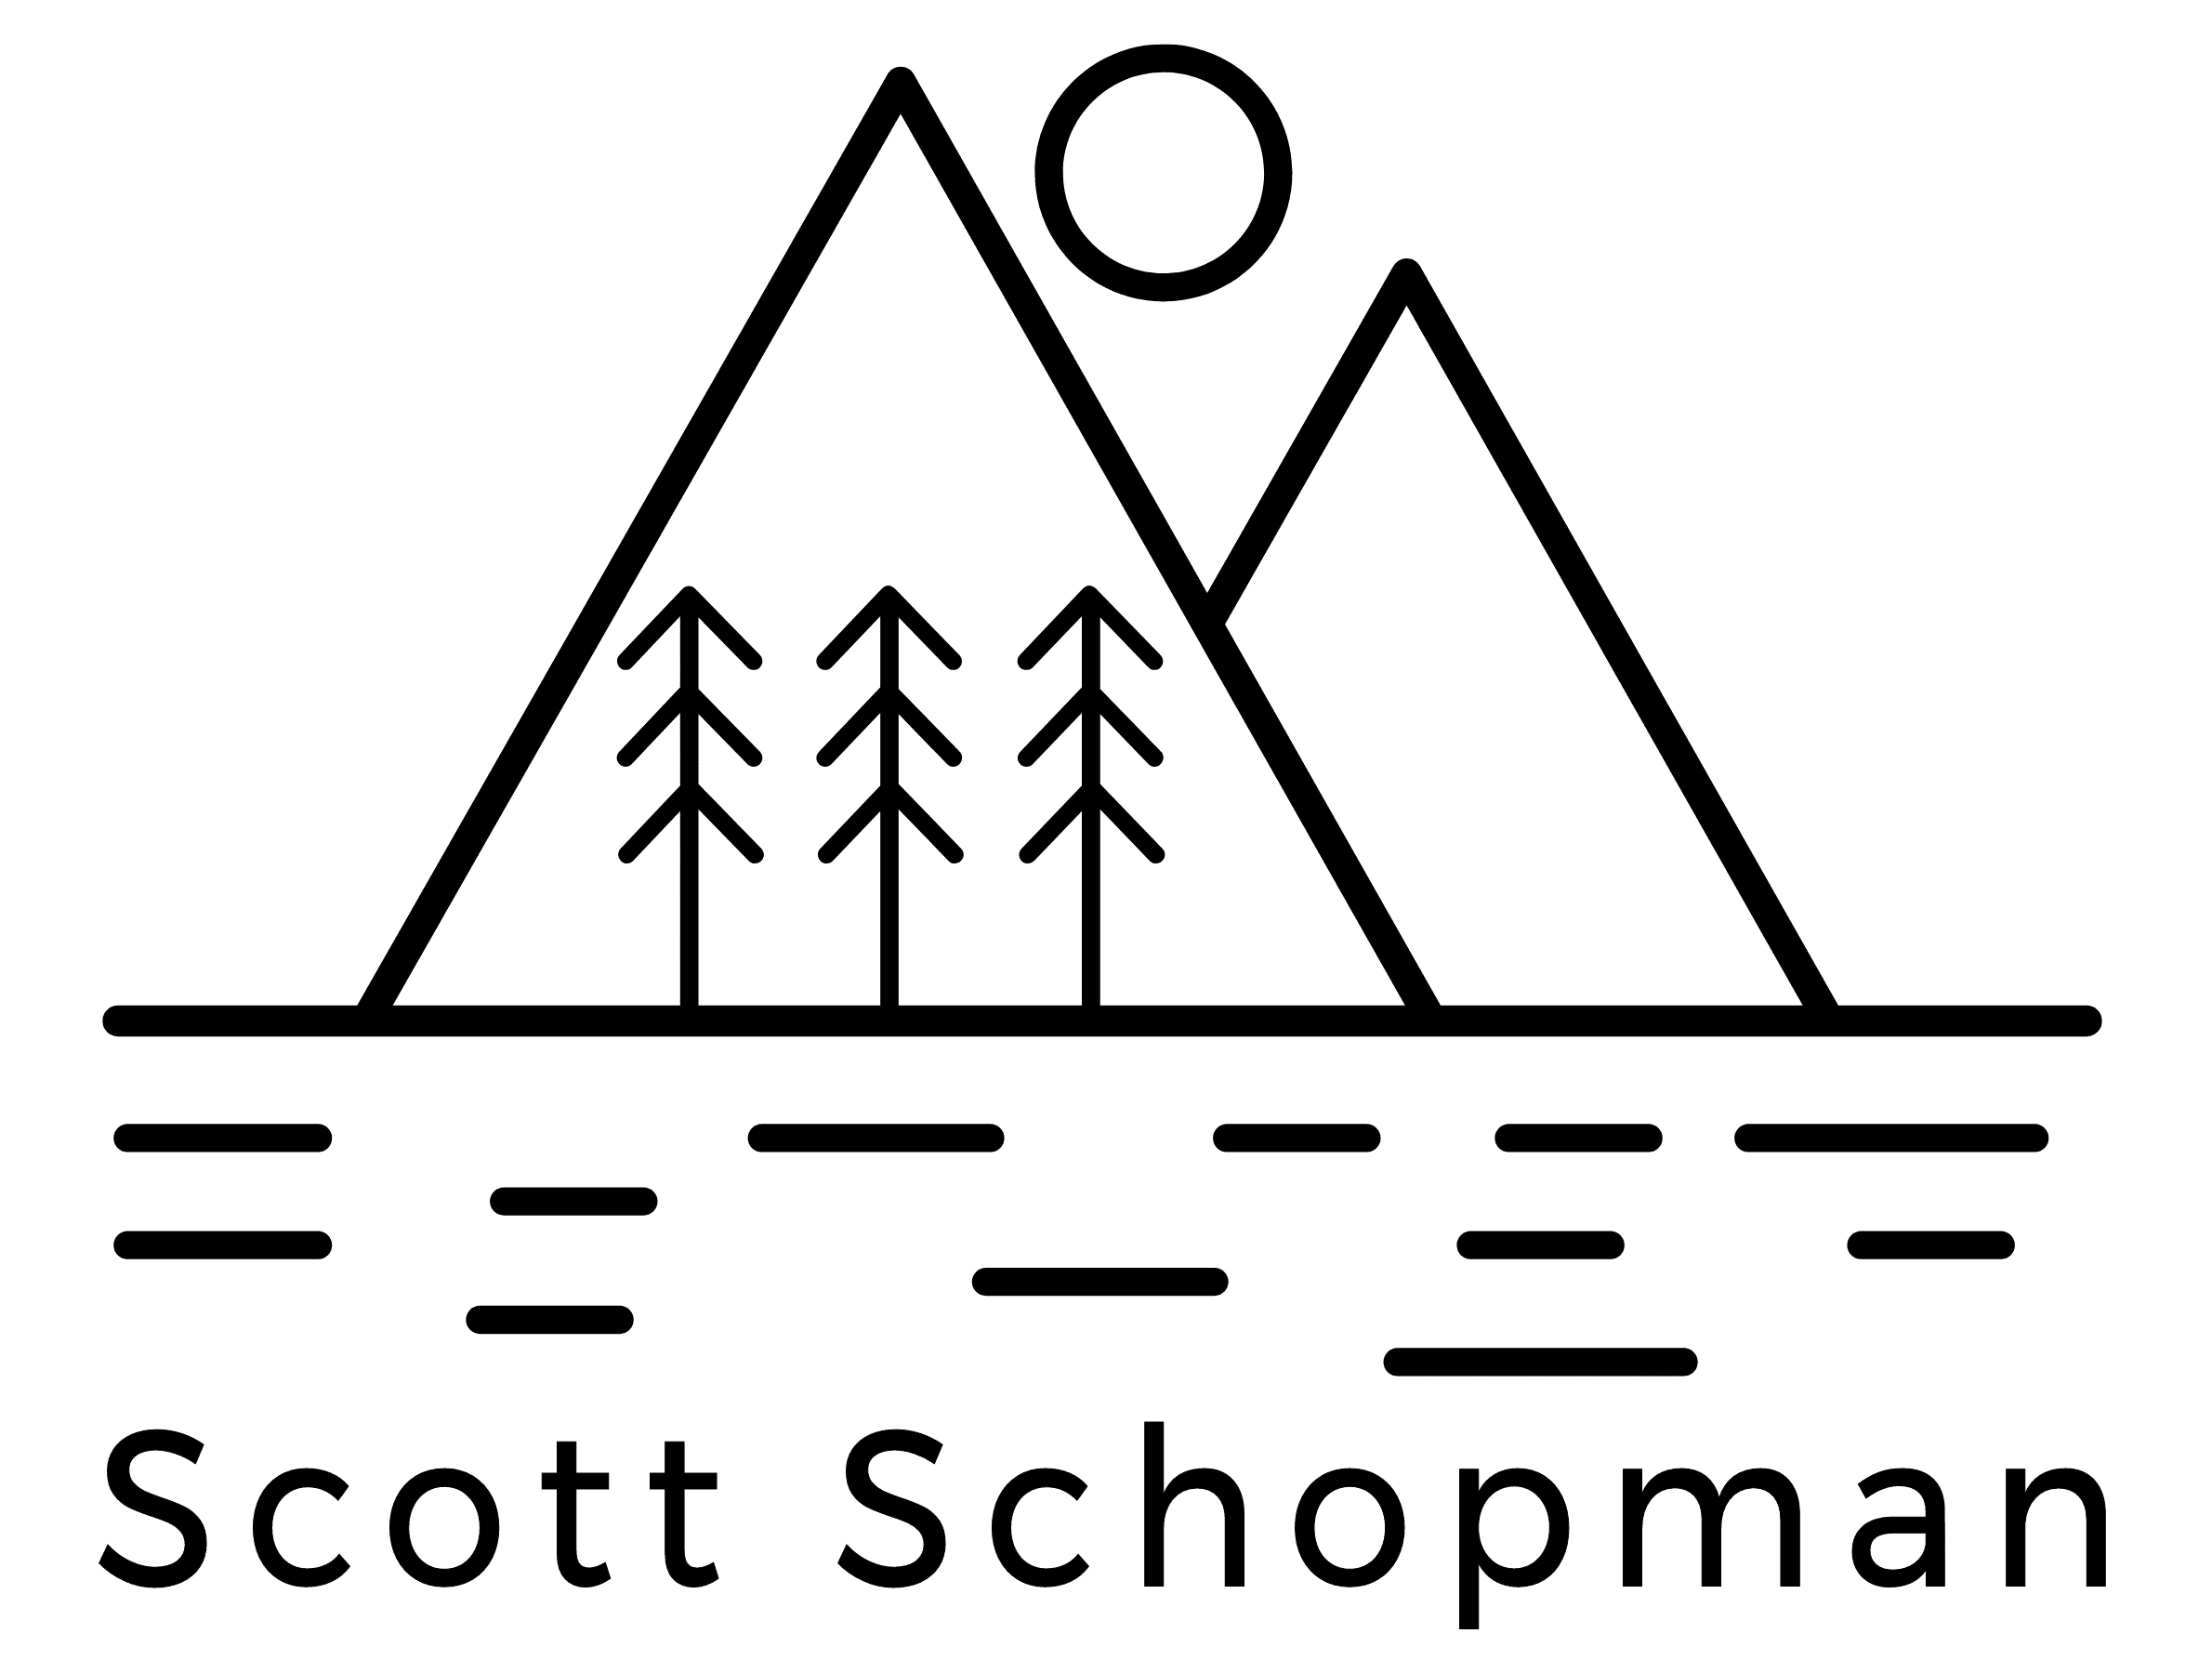 Scott Schopman